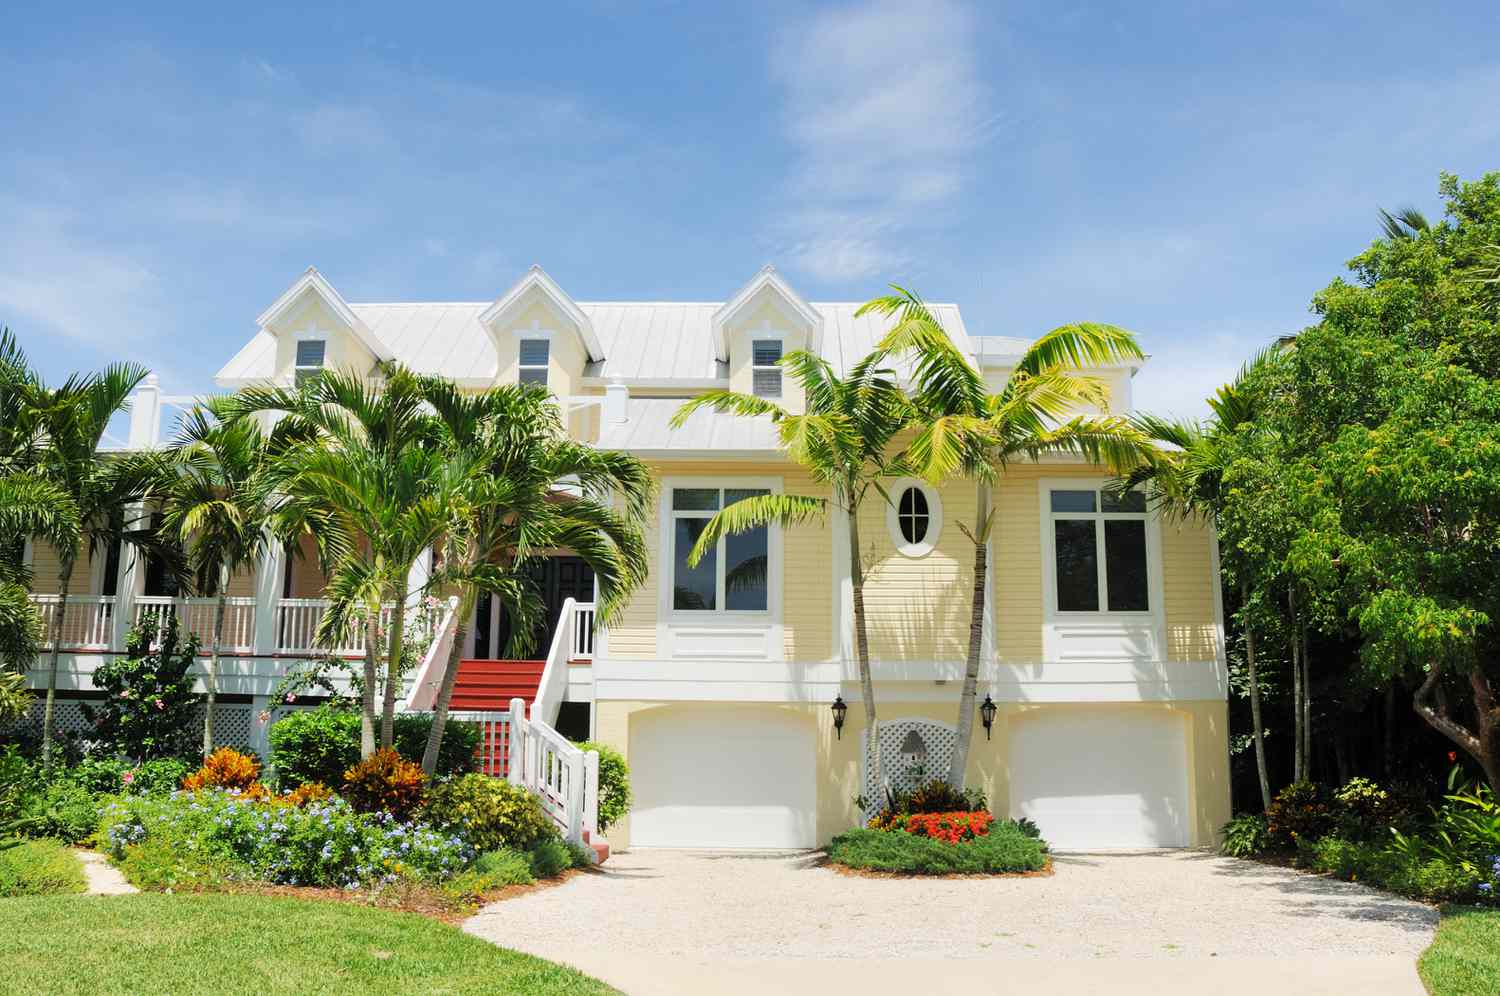 Schönes Strandhaus auf Sanibel Island Florida